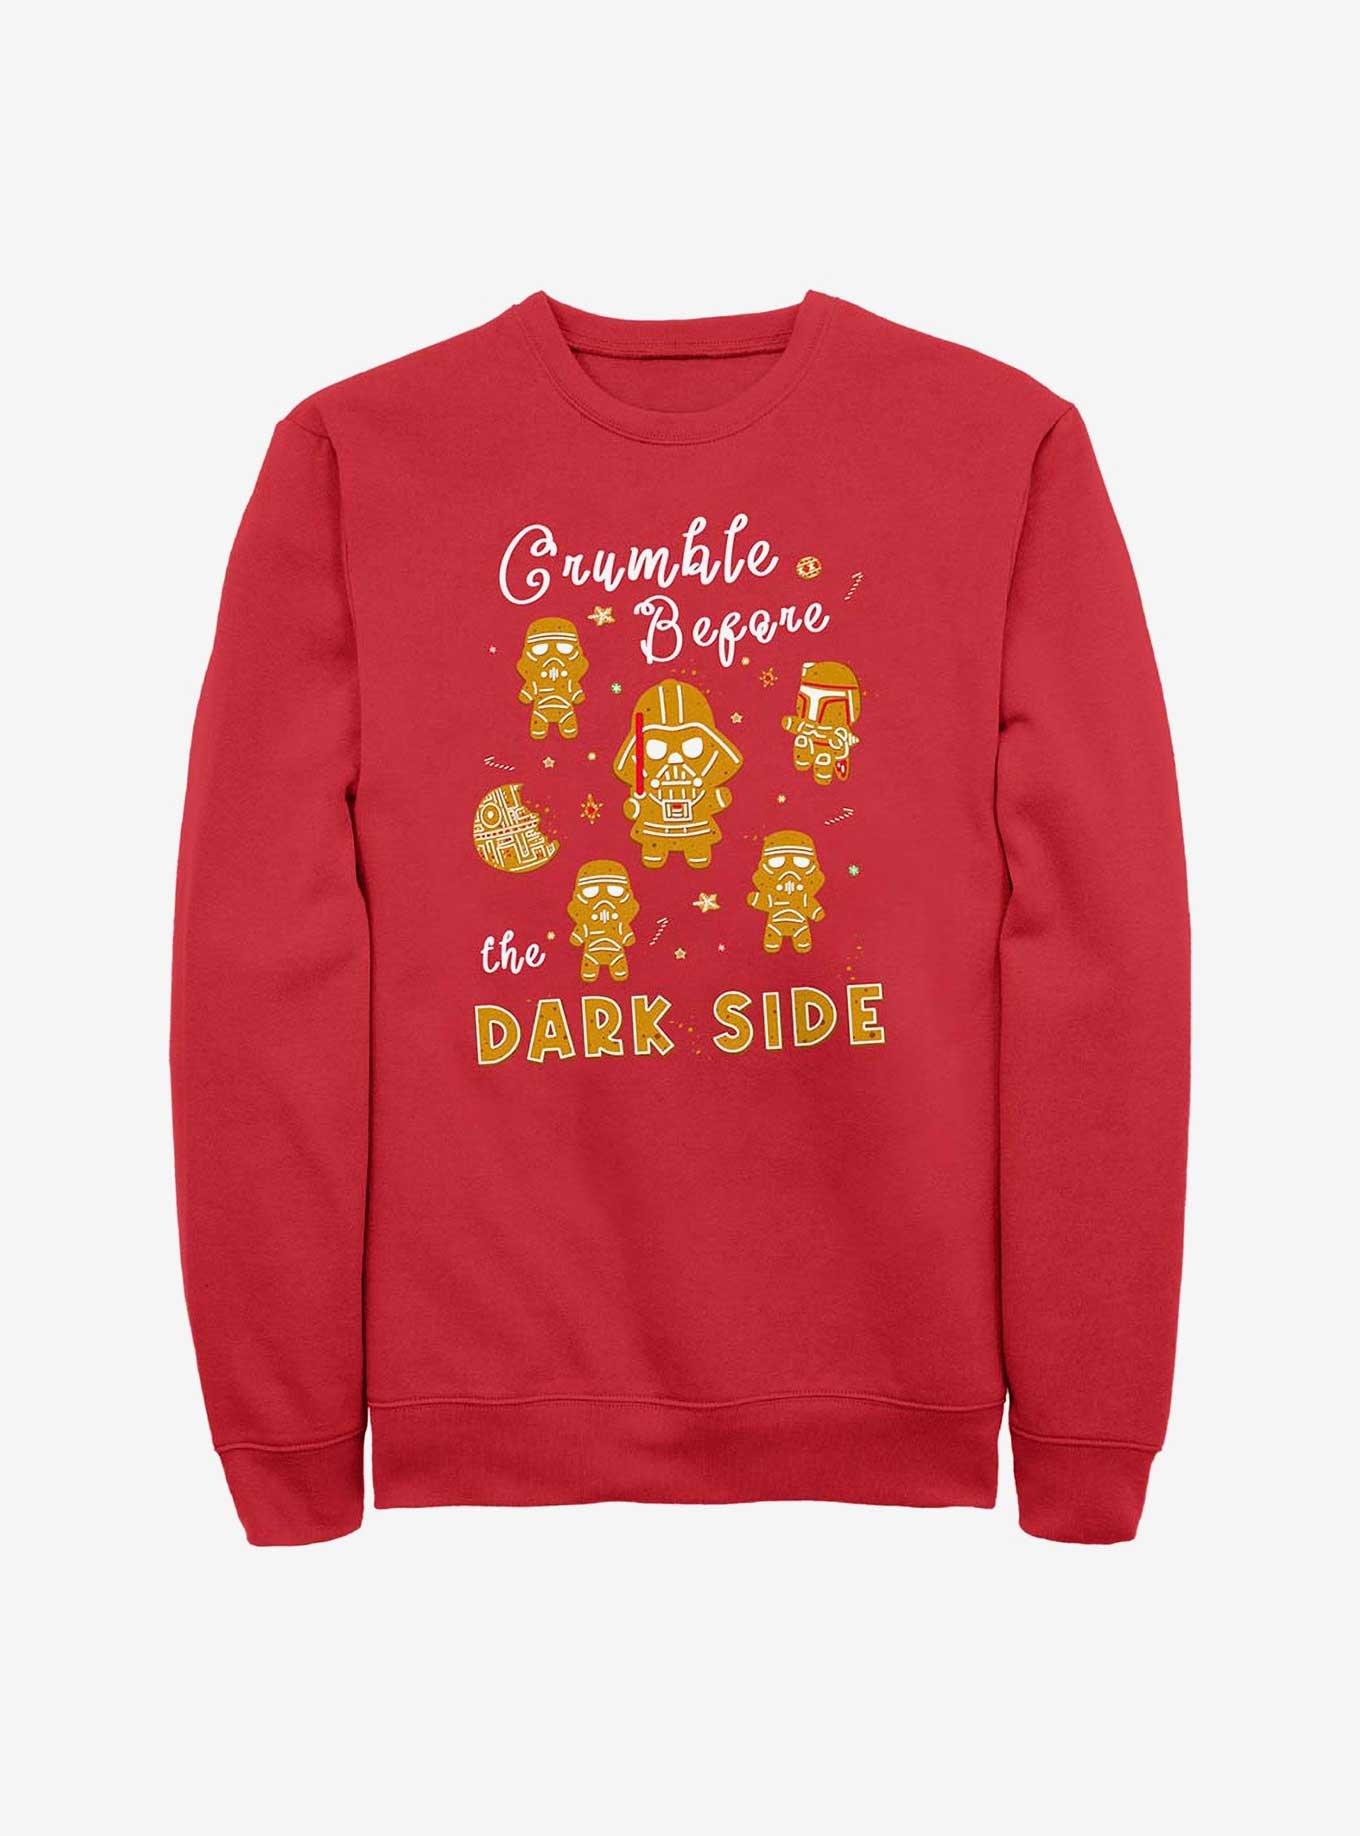 Star Wars Crumble Before The Dark Side Cookies Sweatshirt, RED, hi-res